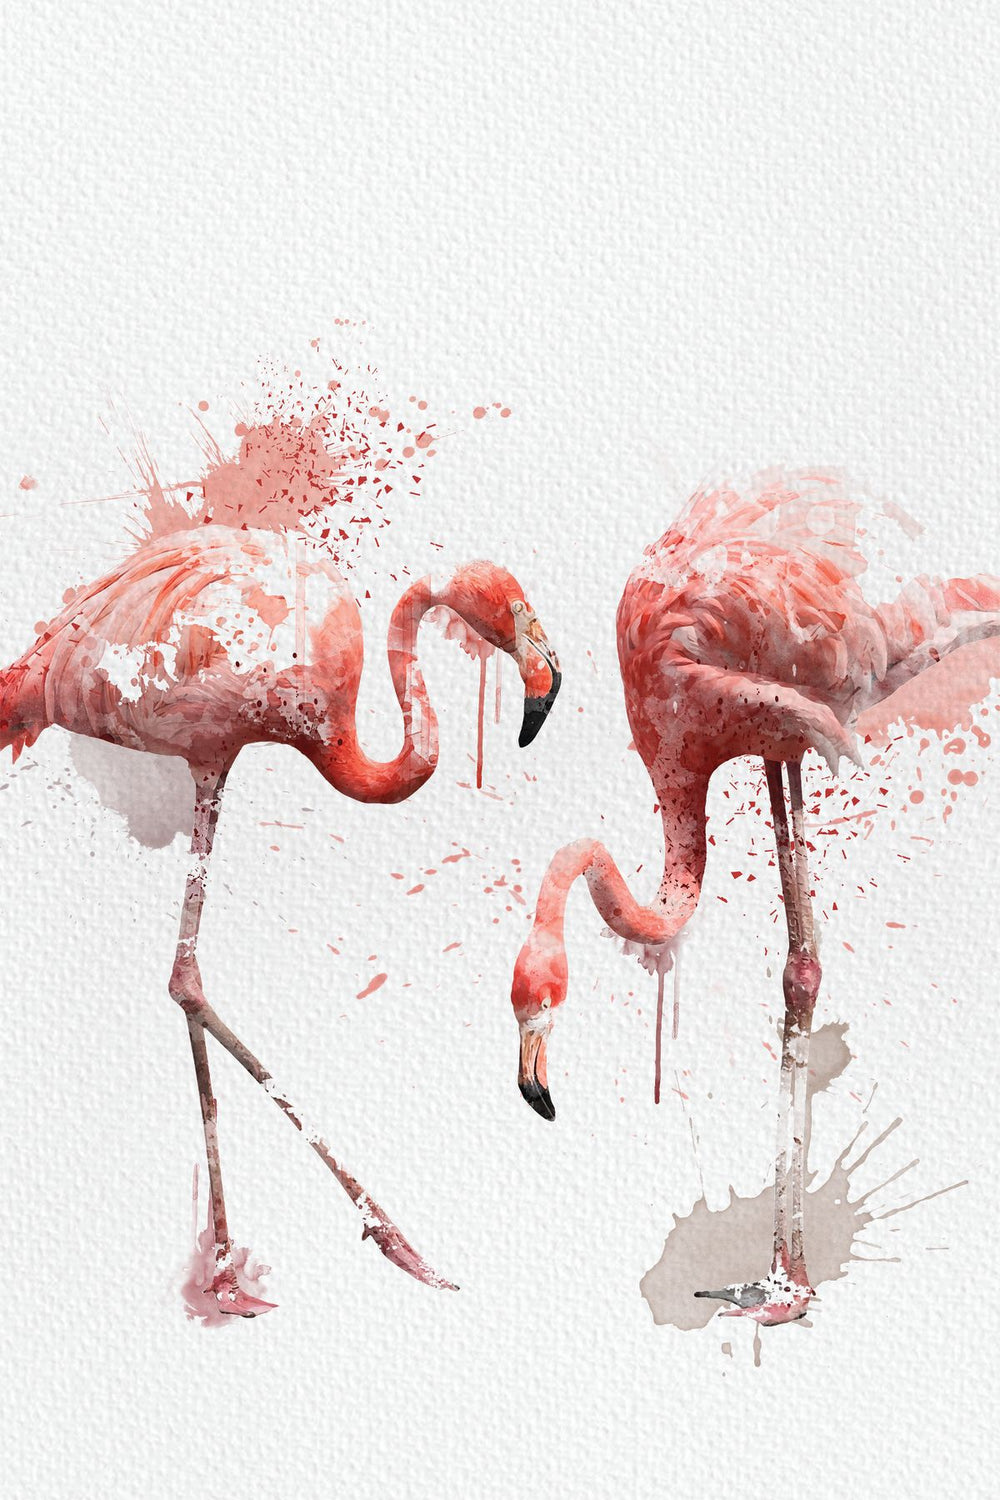 Pair Of Flamingos Watercolor Splash